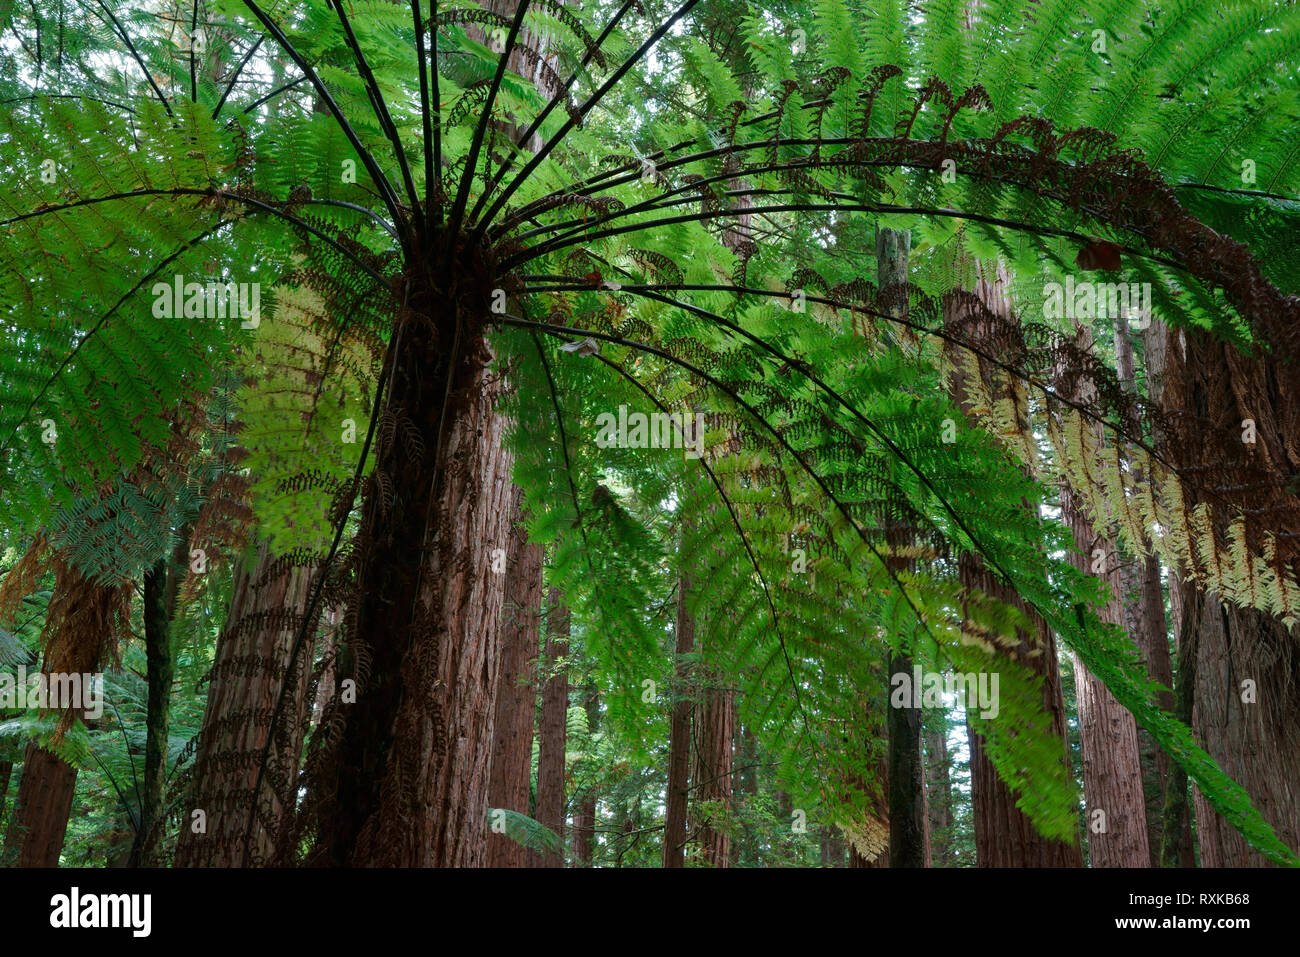 Silver Fern und Redwoods 1 Cyathea dealbata; Sequoia sempervirens Test Site, um zu sehen, welche ausländischen Woods wuchs am besten. Die Redwoods und Whakarewarewa Forest Rotarua, North Island, Neuseeland Stockfoto